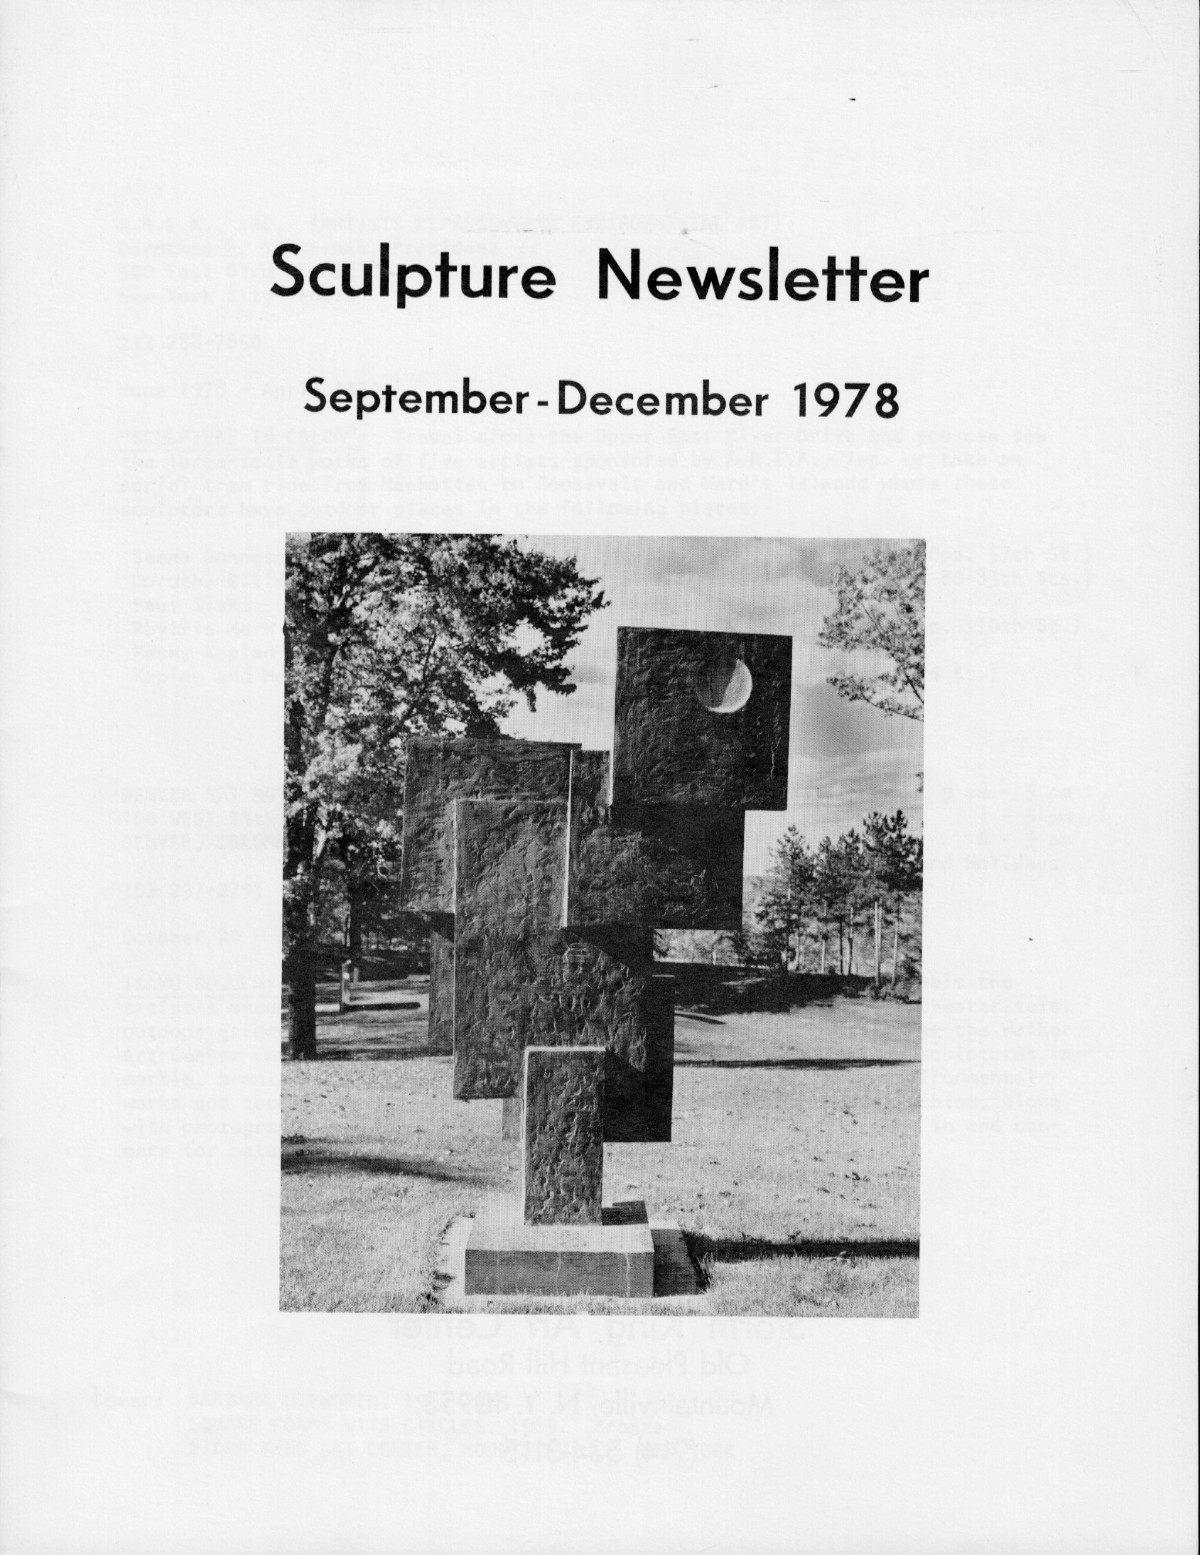 Storm King Art Center Newsletter, September - December 1978